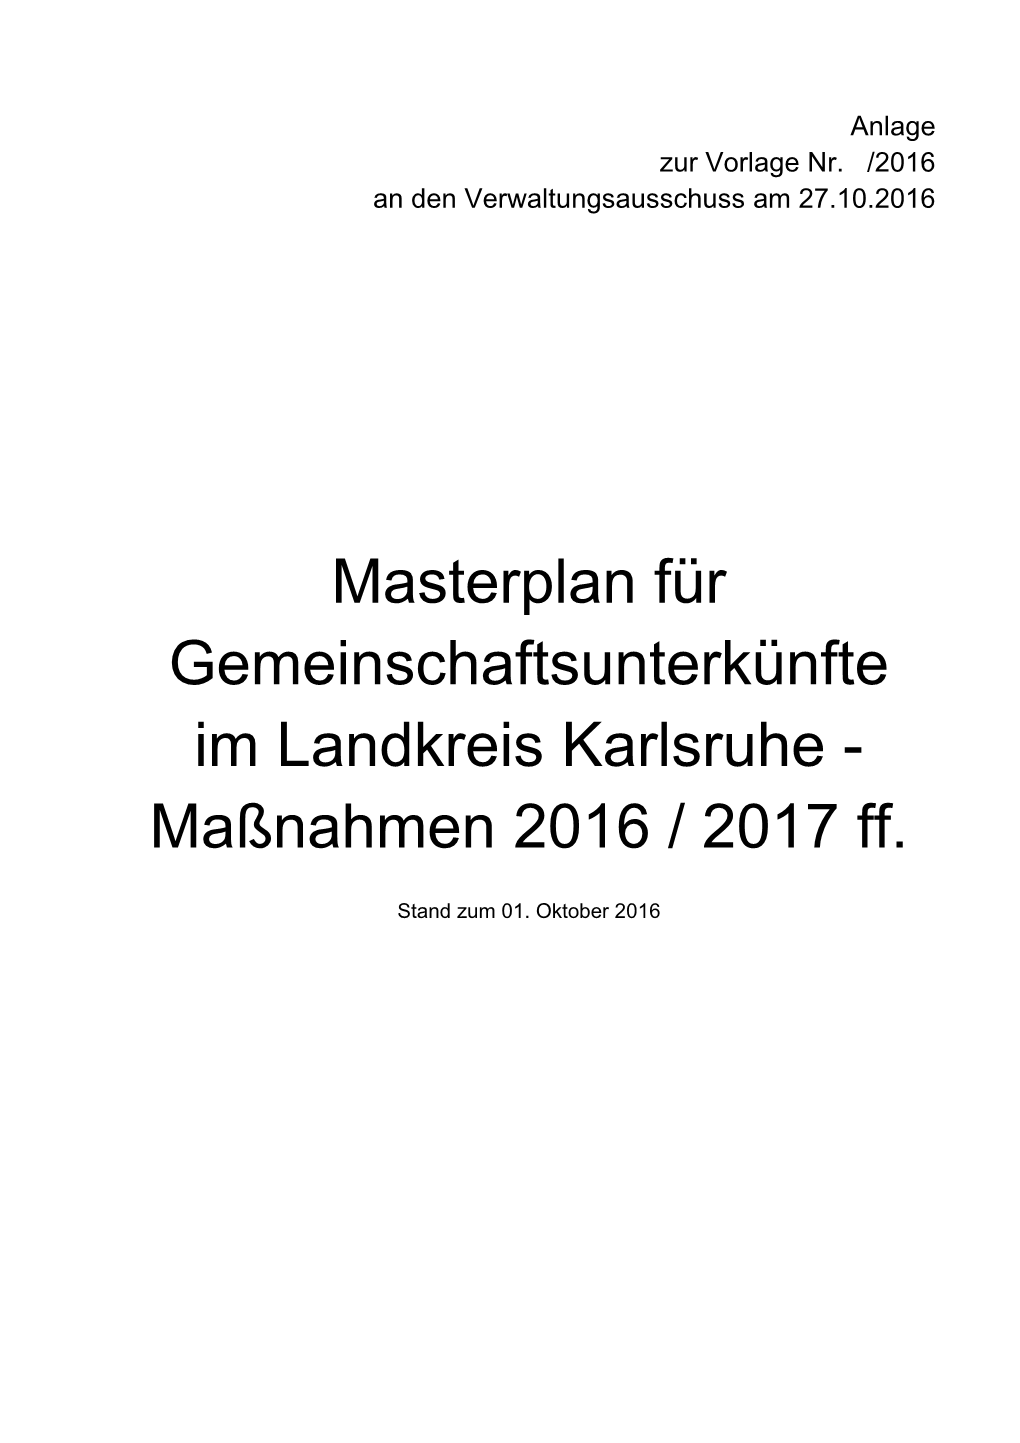 Masterplan Für Gemeinschaftsunterkünfte Im Landkreis Karlsruhe - Maßnahmen 2016 / 2017 Ff